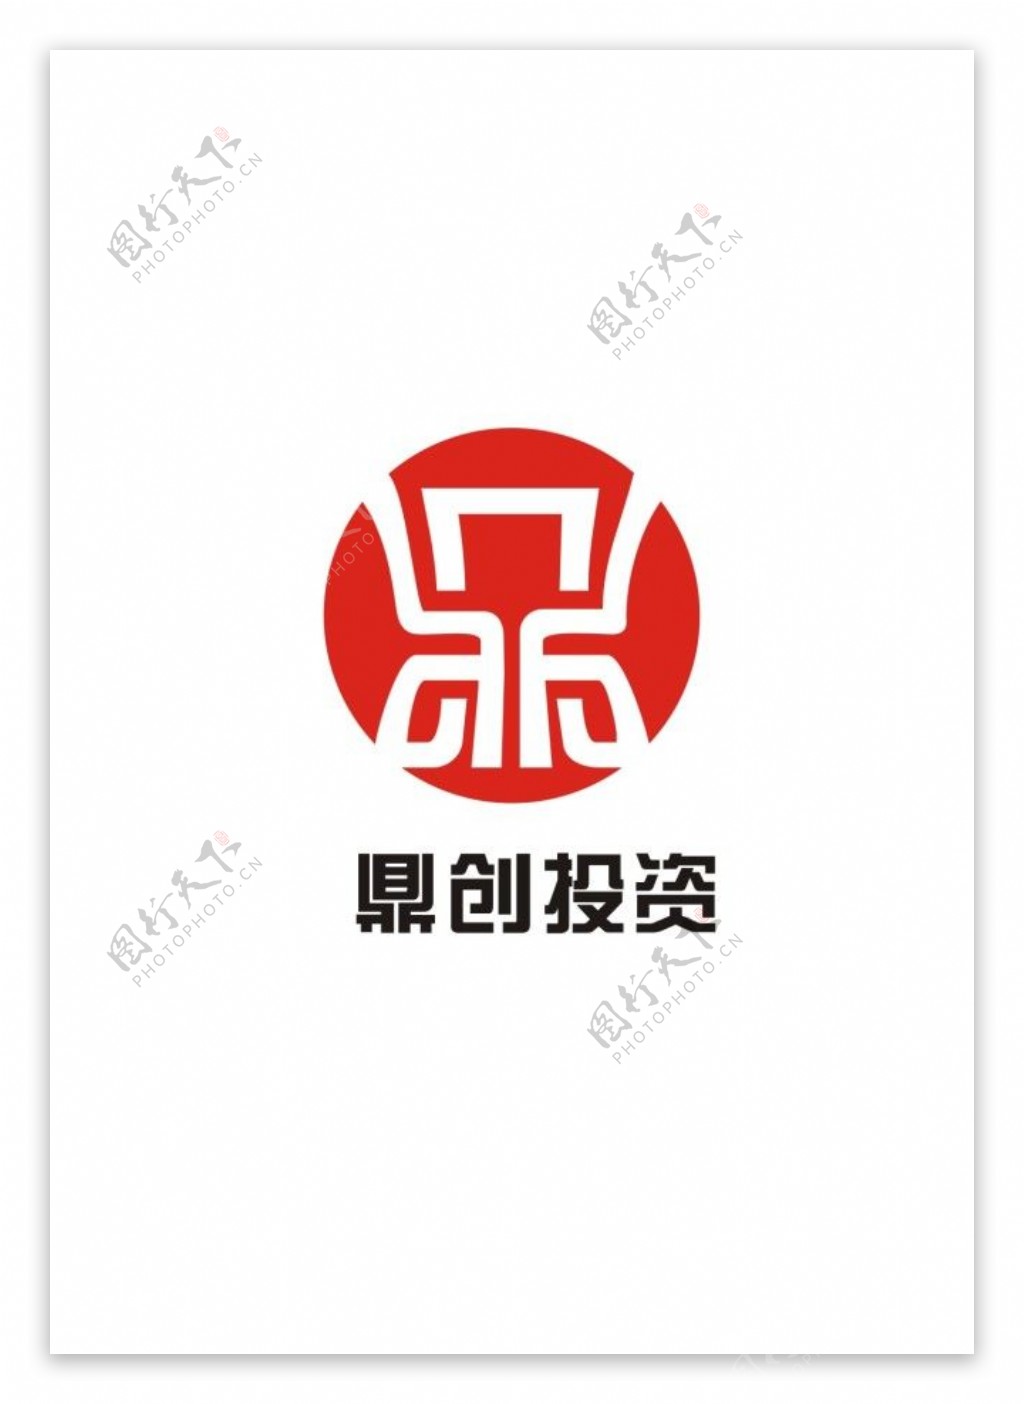 鼎创投资logo